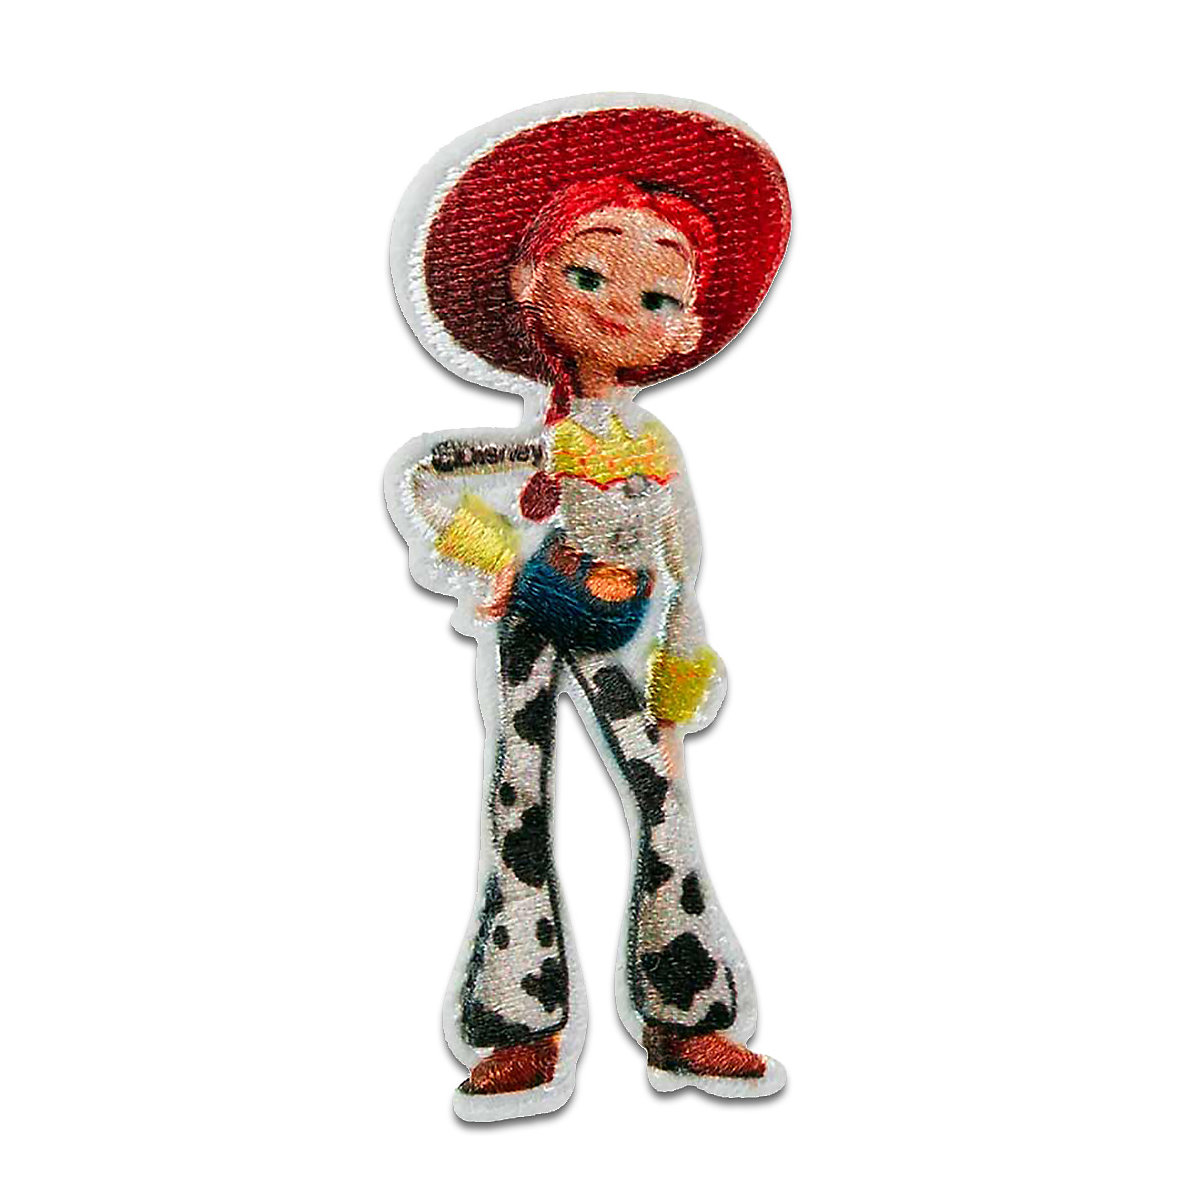 Aufnäher / Bügelbild Toy Story Jessie Cowboy Nähsets für Kinder